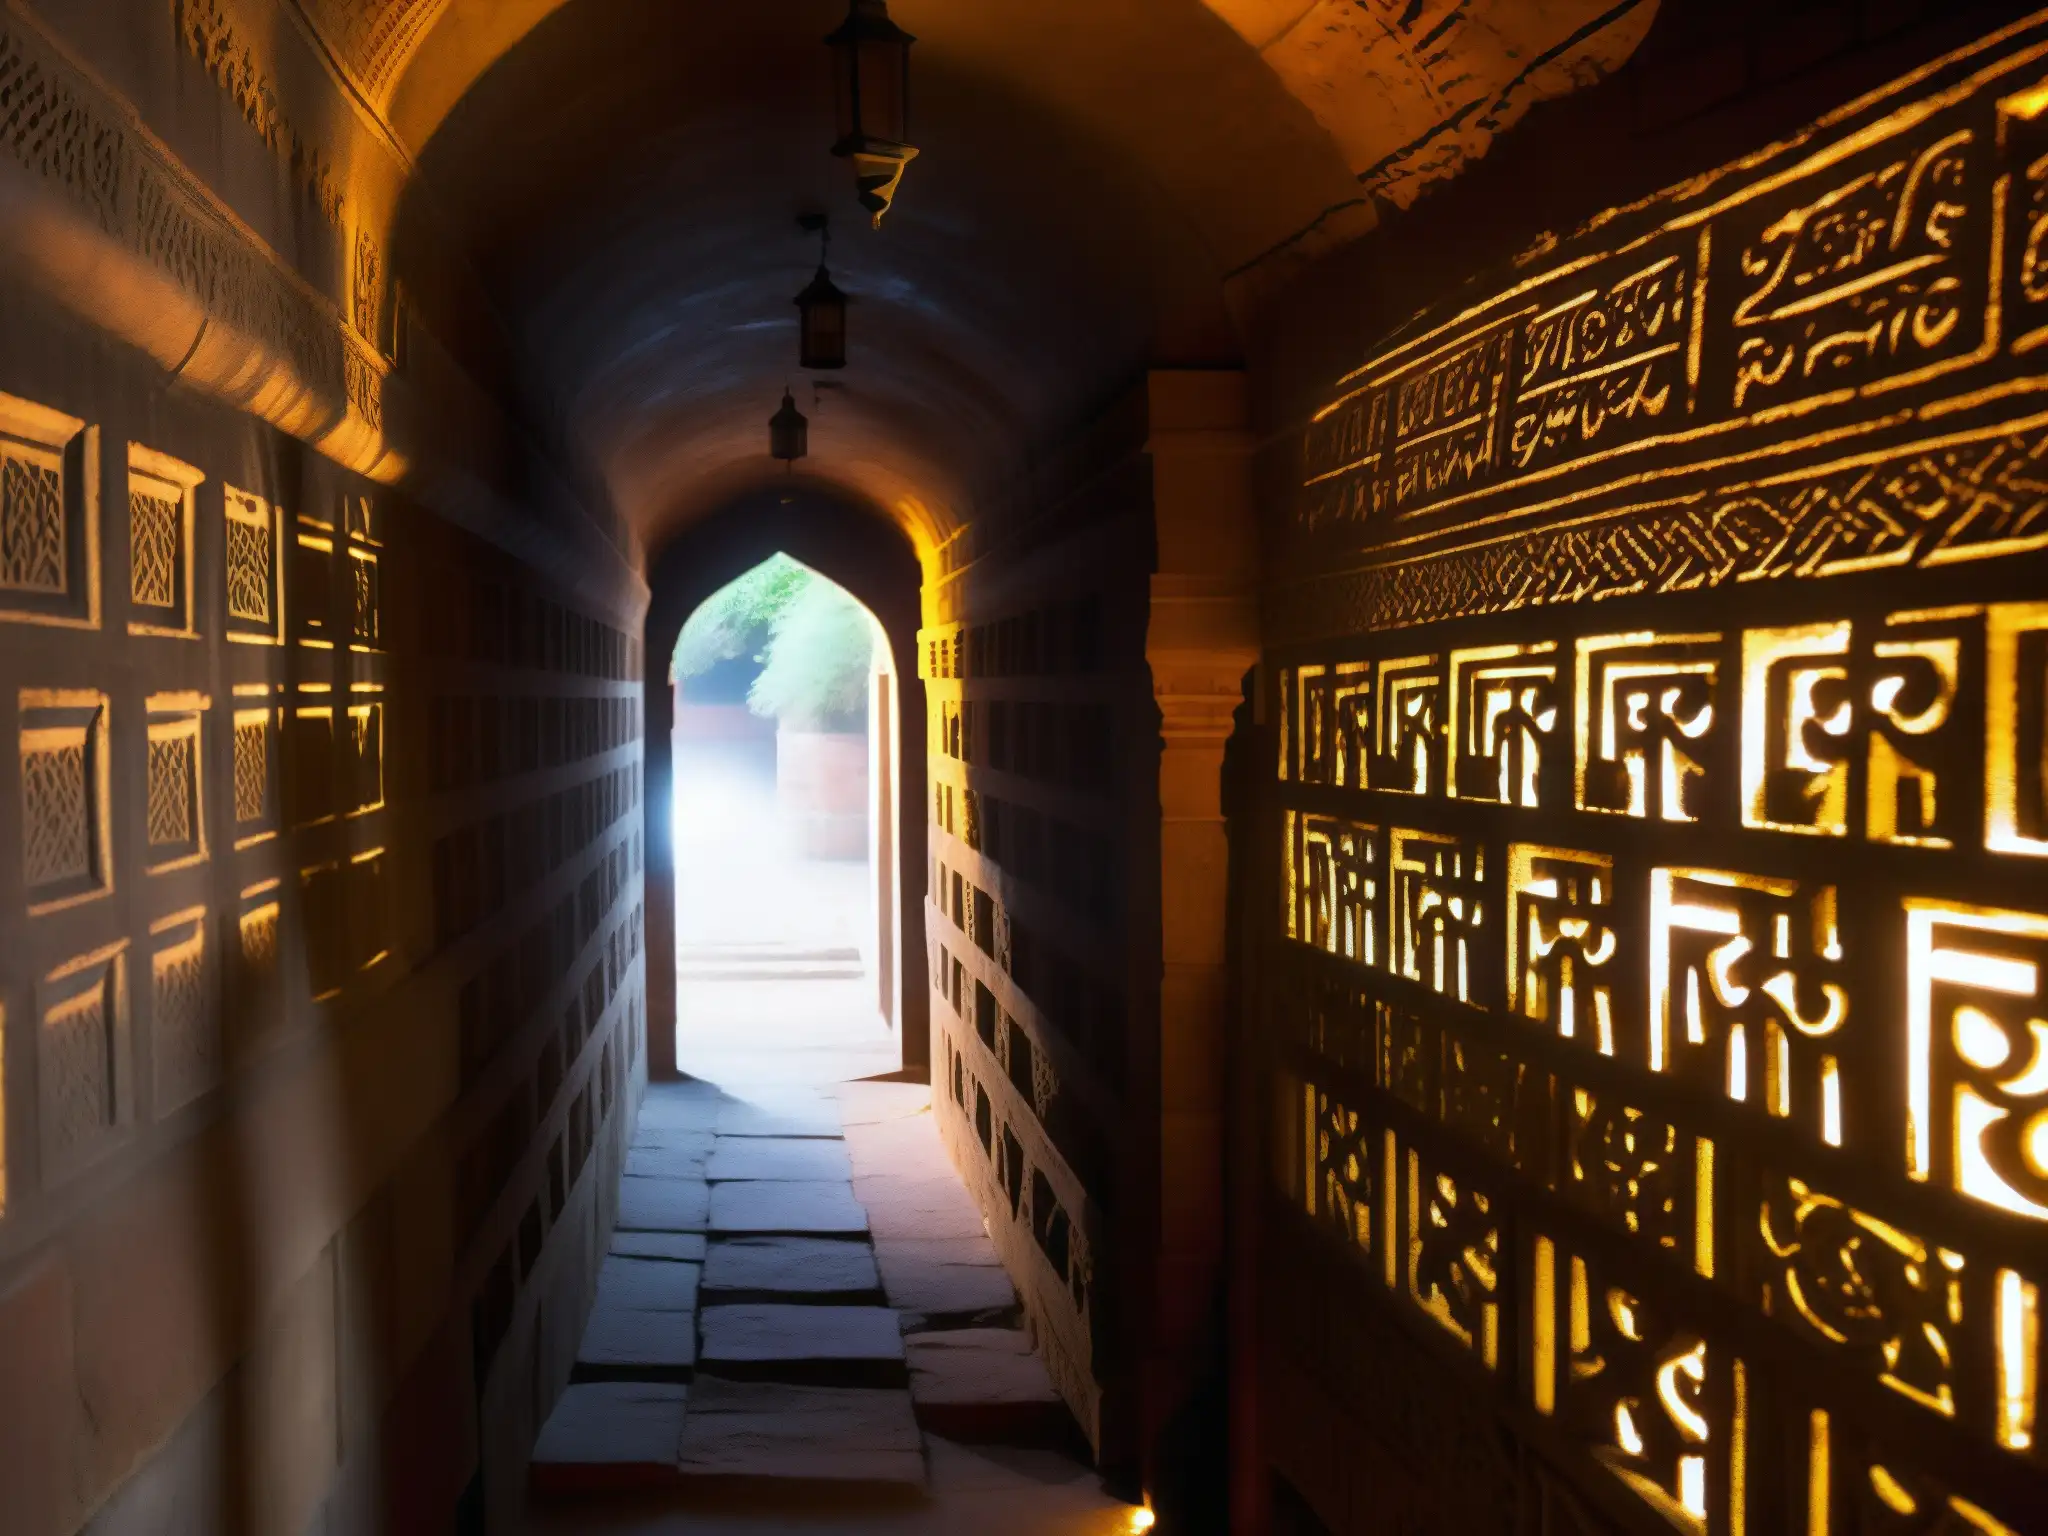 Explora los misteriosos túneles secretos de Agra, con antiguas paredes de piedra y símbolos enigmáticos iluminados por antorchas